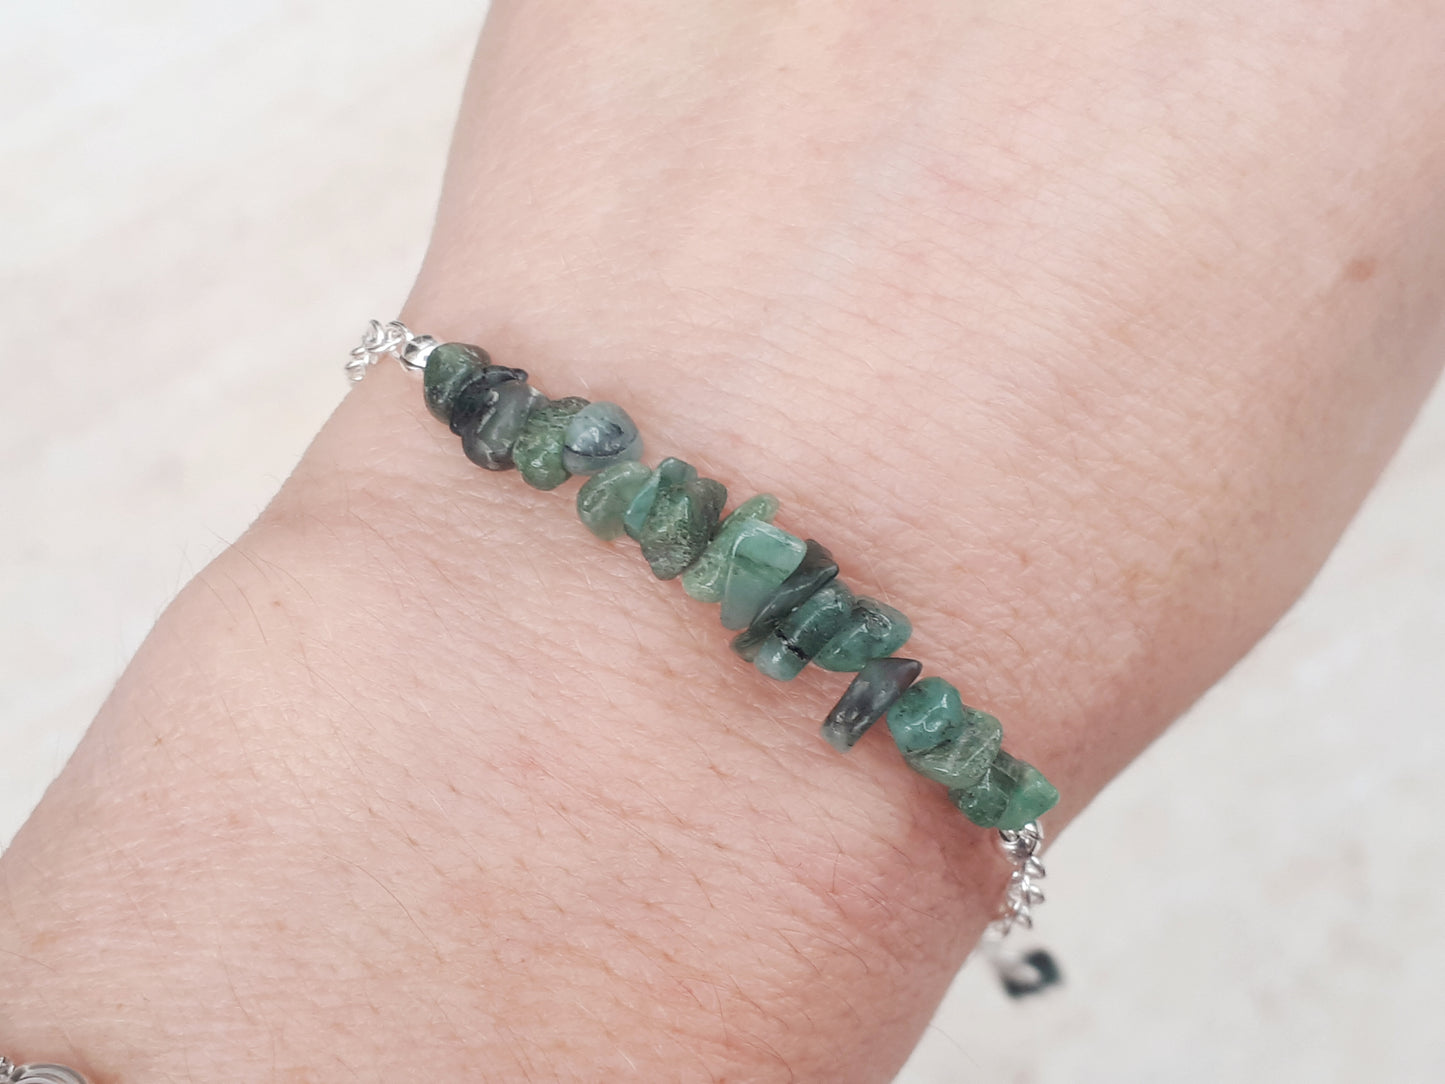 Emerald adjustable bracelet in sterling silver.